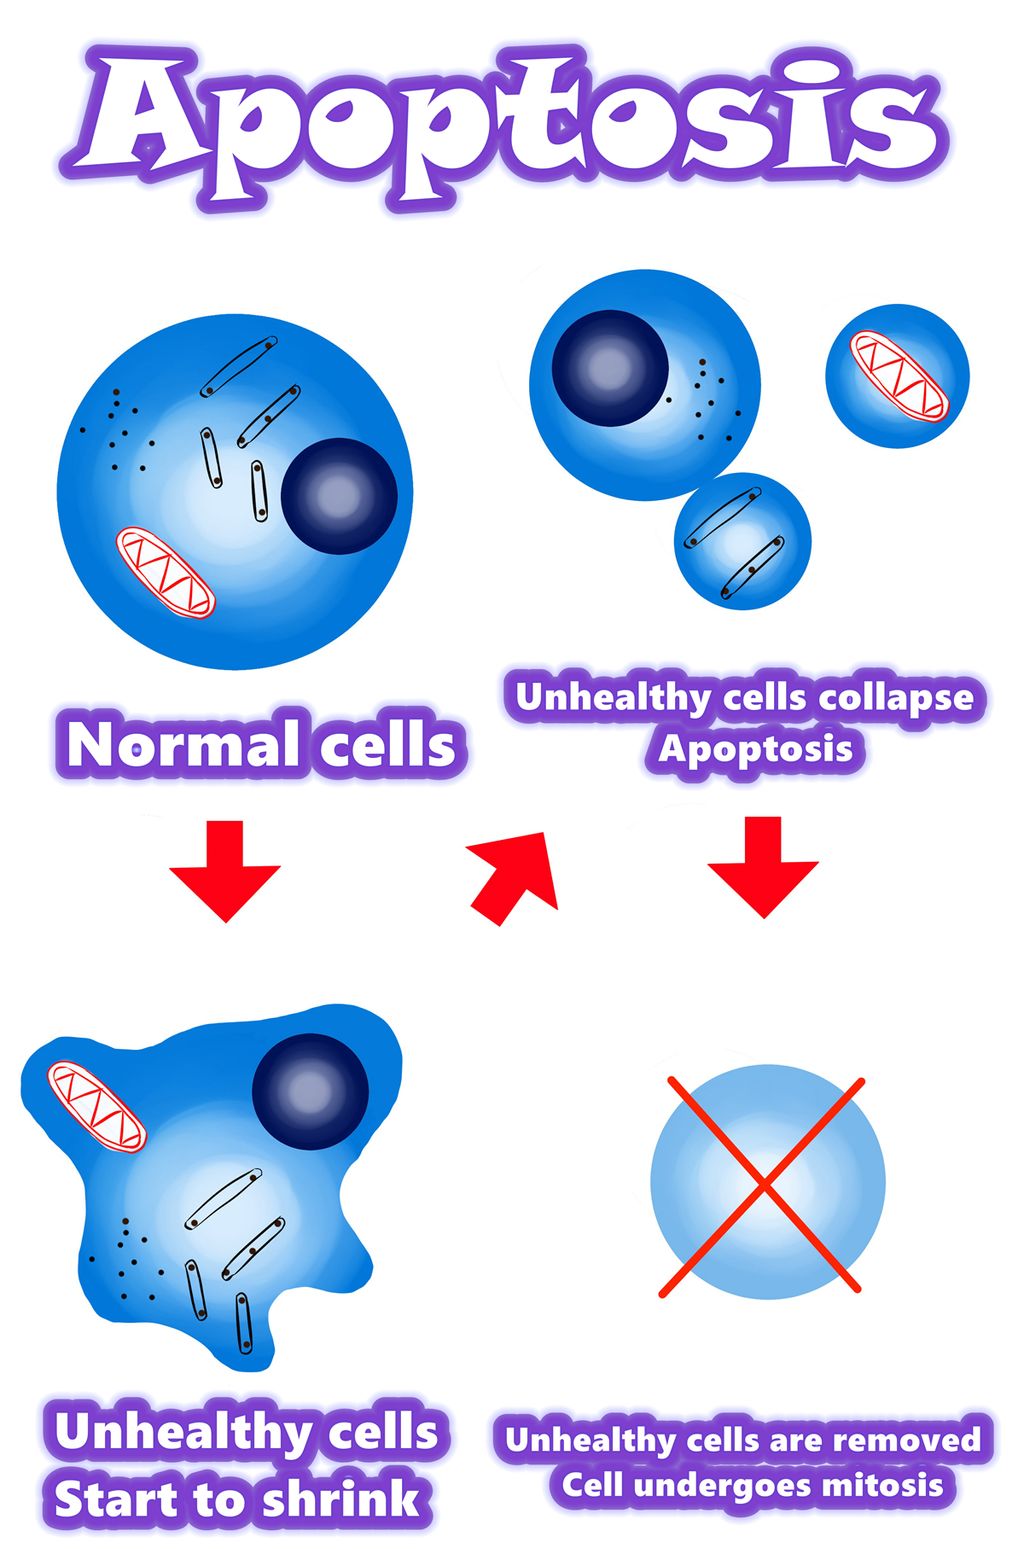 Solamargine | Лучшее решение от раковых клеток в 2021 году | Апоптоз против раковых клеток | Апоптоз против аномальных клеток | Апоптоз против мутантных клеток | Обзор / Резюме / Механизм апоптоза